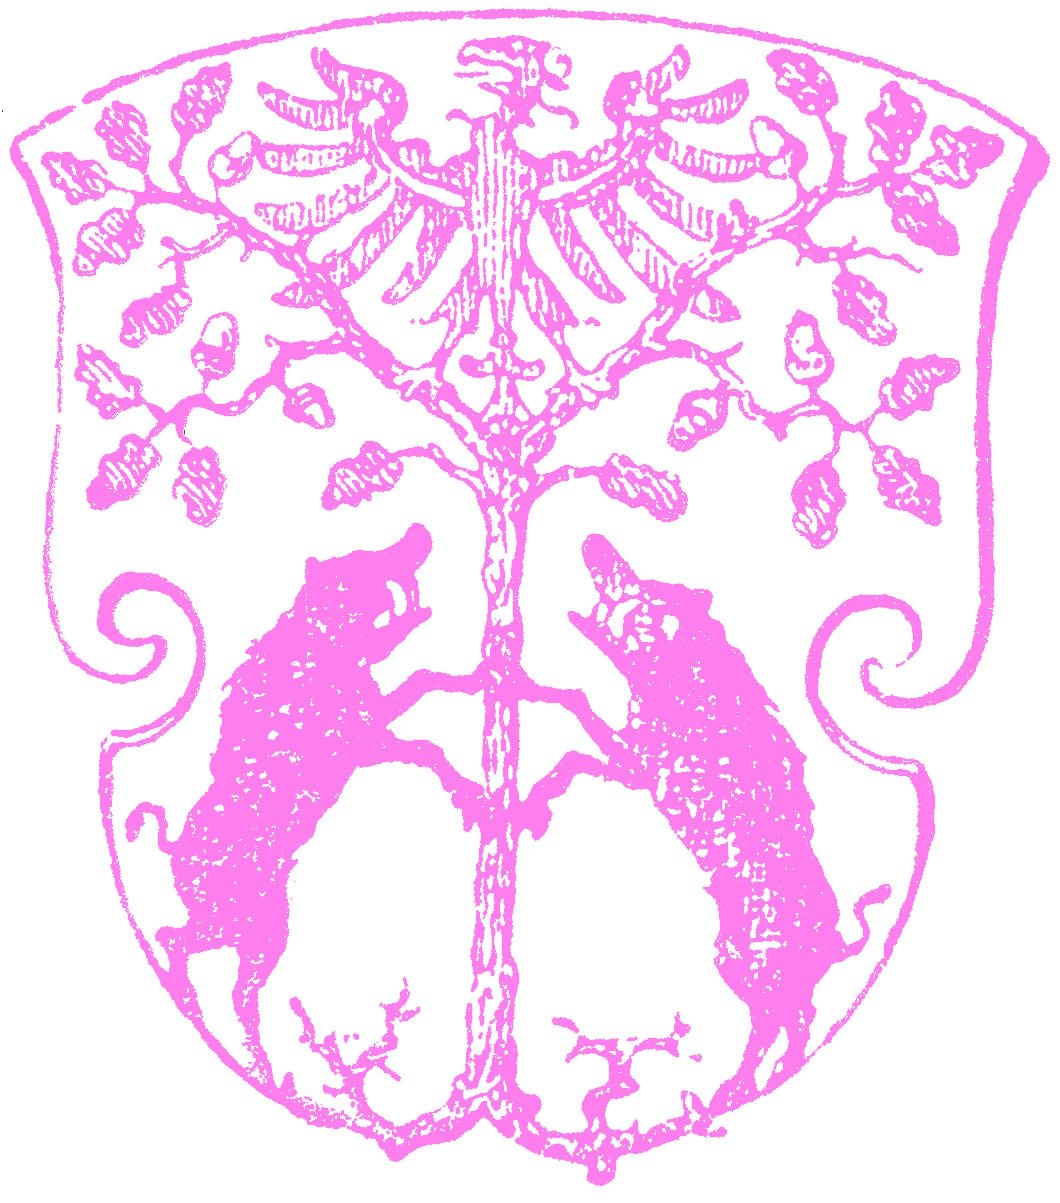 [Eberswalde_coat_of_arms_1892.jpg]